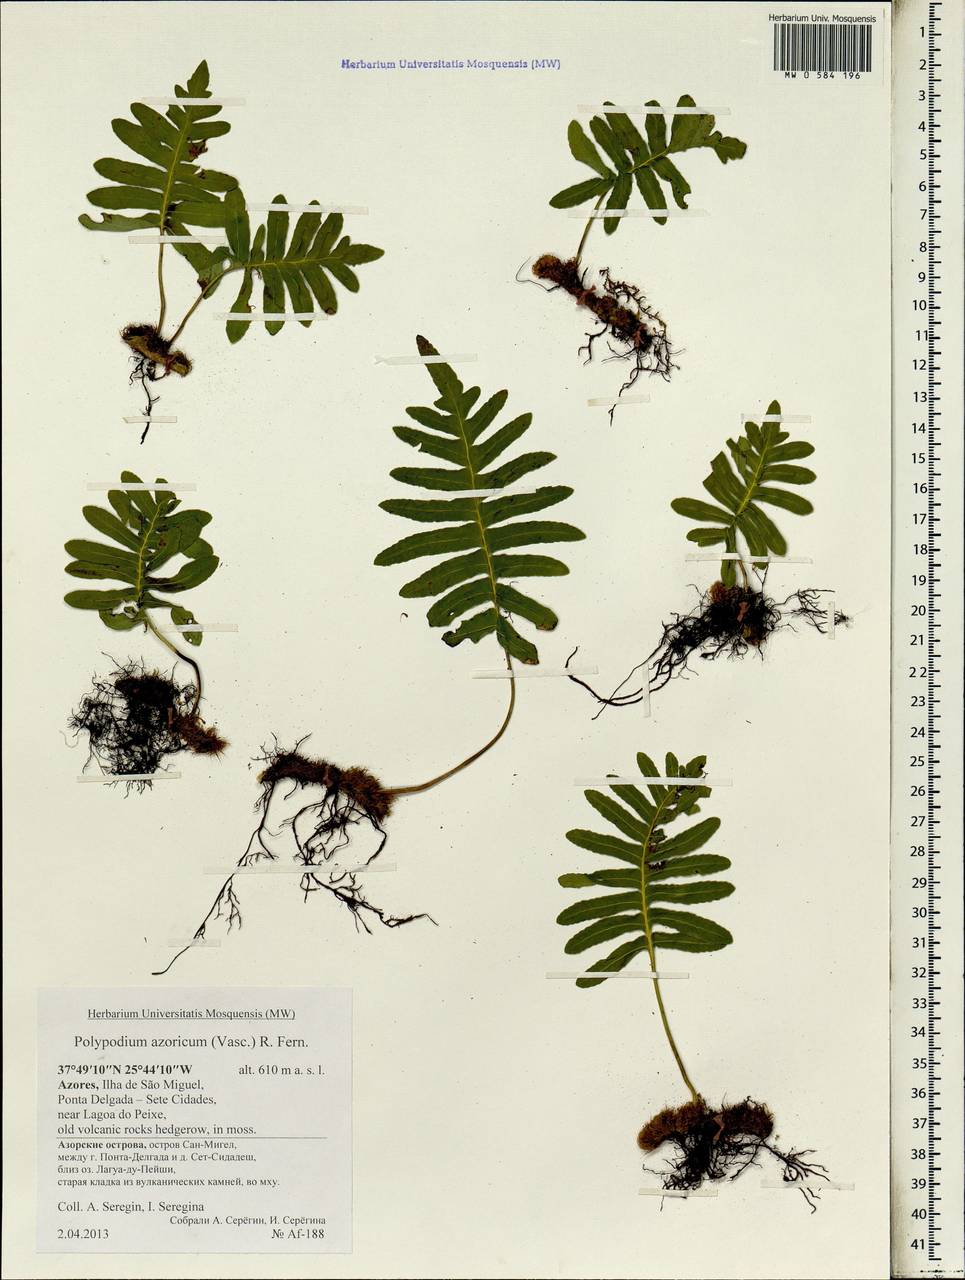 Polypodium macaronesicum subsp. azoricum (Vasc.) F. J. Rumsey, Carine & Robba, Africa (AFR) (Portugal)